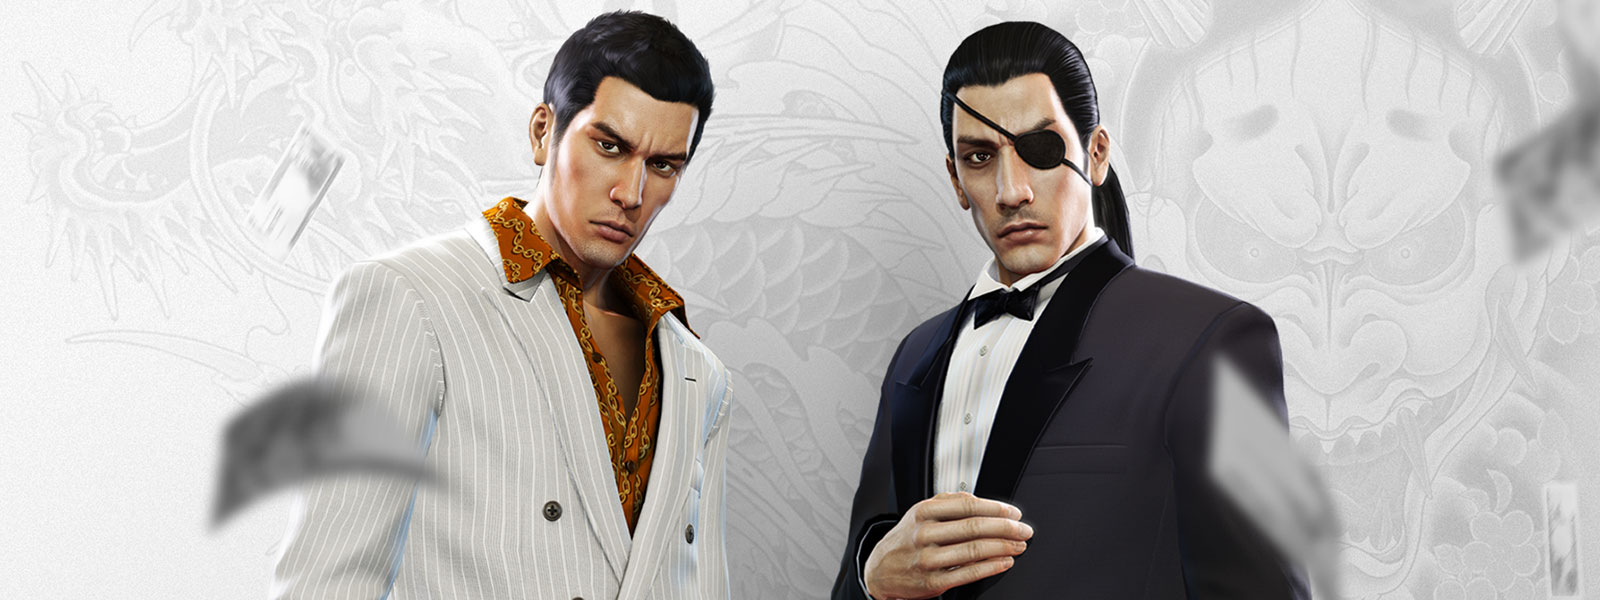 Två Yakuza-karaktärer i eleganta kostymer ser på medan pengar faller omkring dem, med en gråvit draktatuering som bakgrund